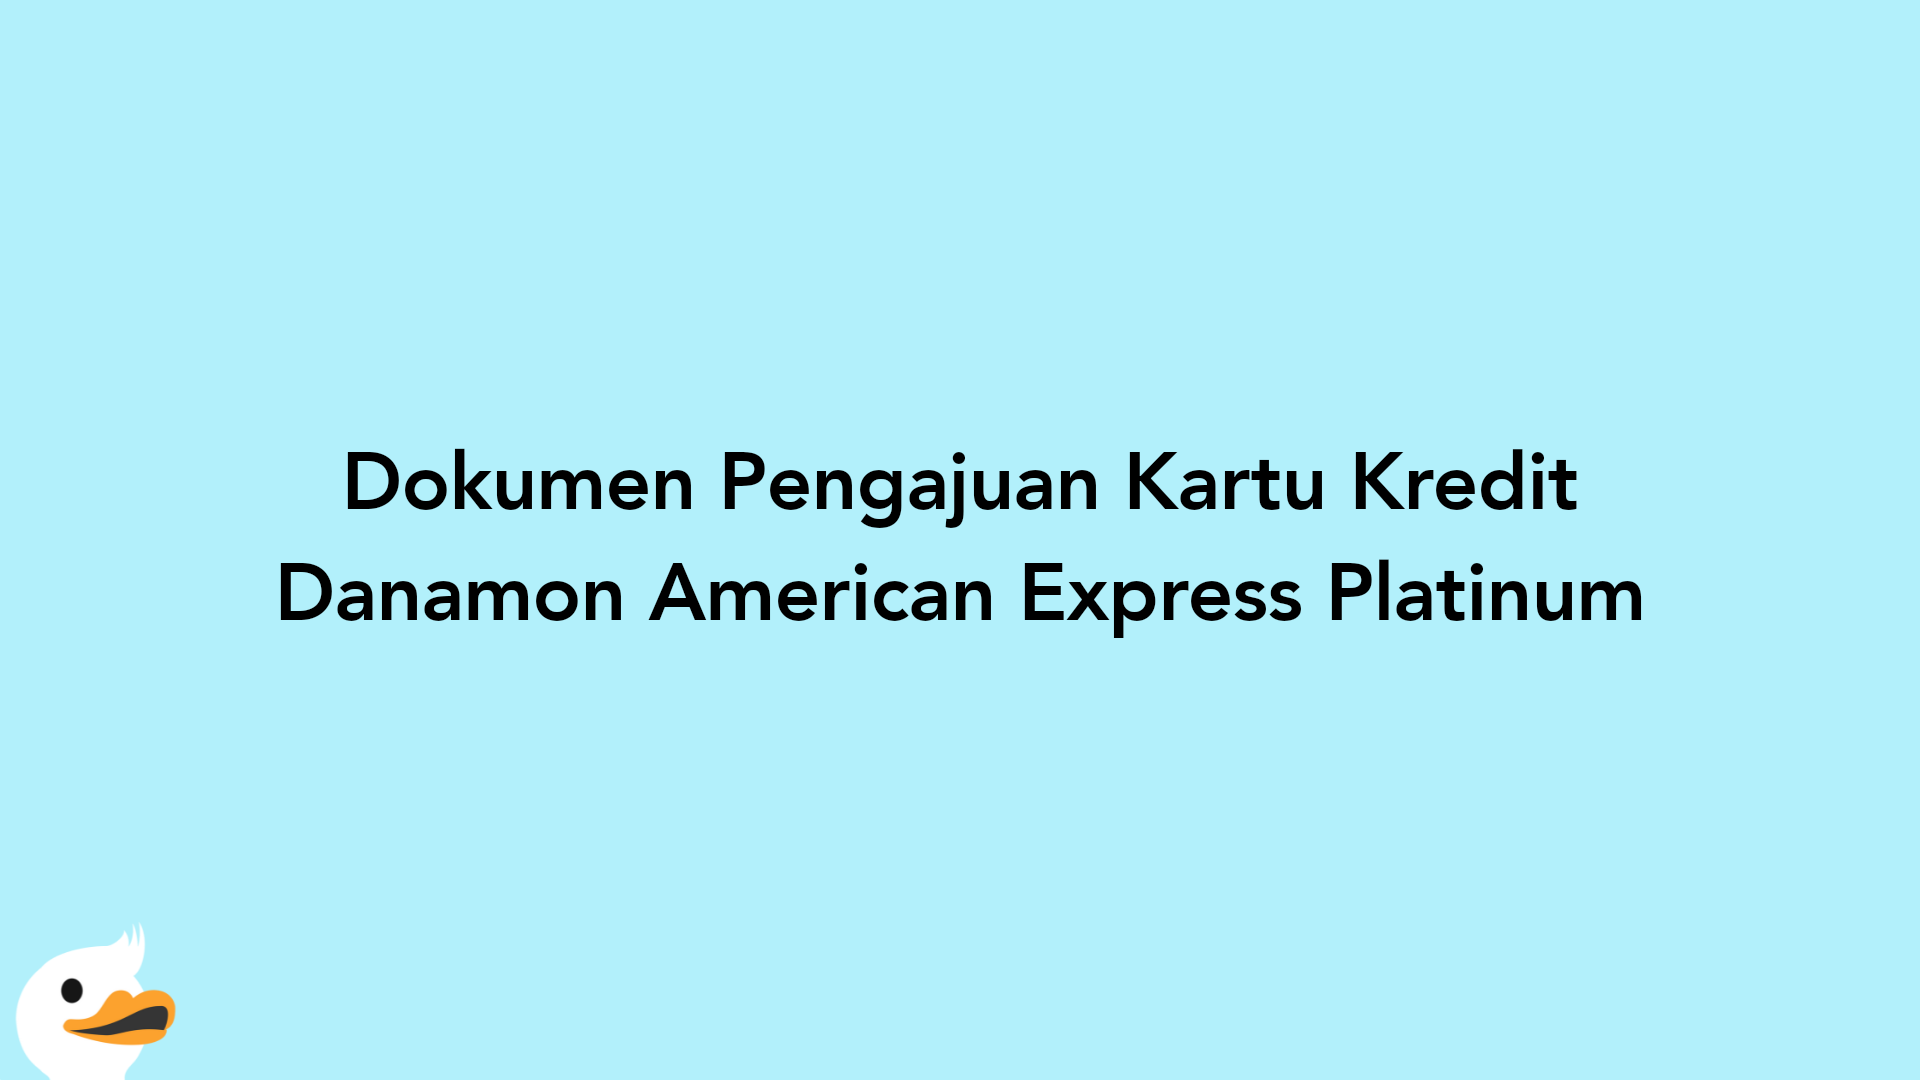 Dokumen Pengajuan Kartu Kredit Danamon American Express Platinum